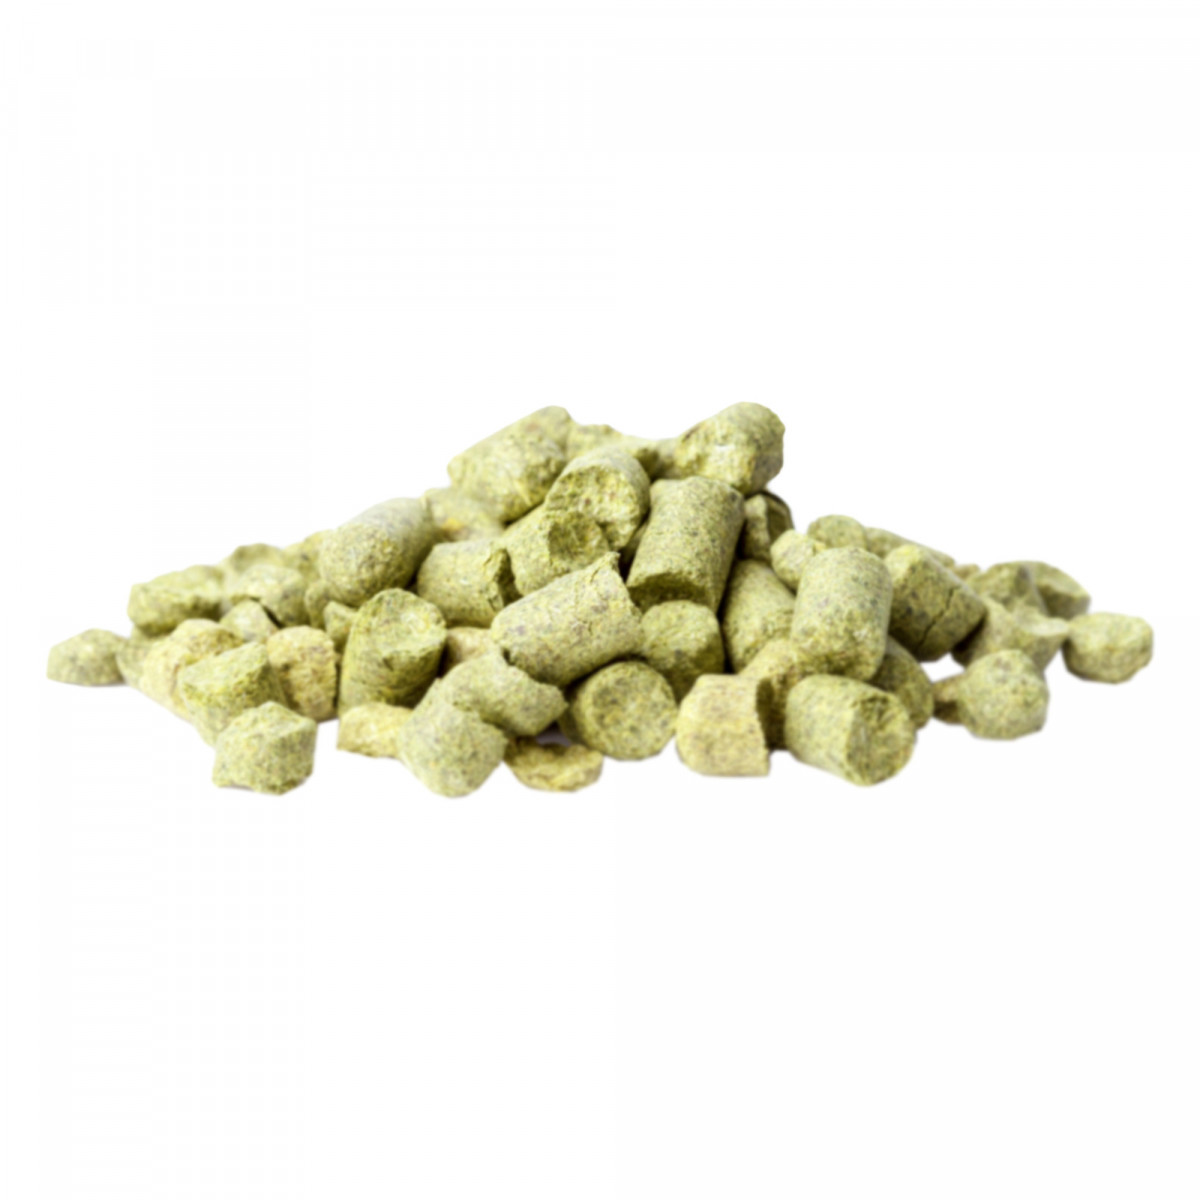 Yakima Chief Hops® Idaho 7® T90 hop pellets - 50 g